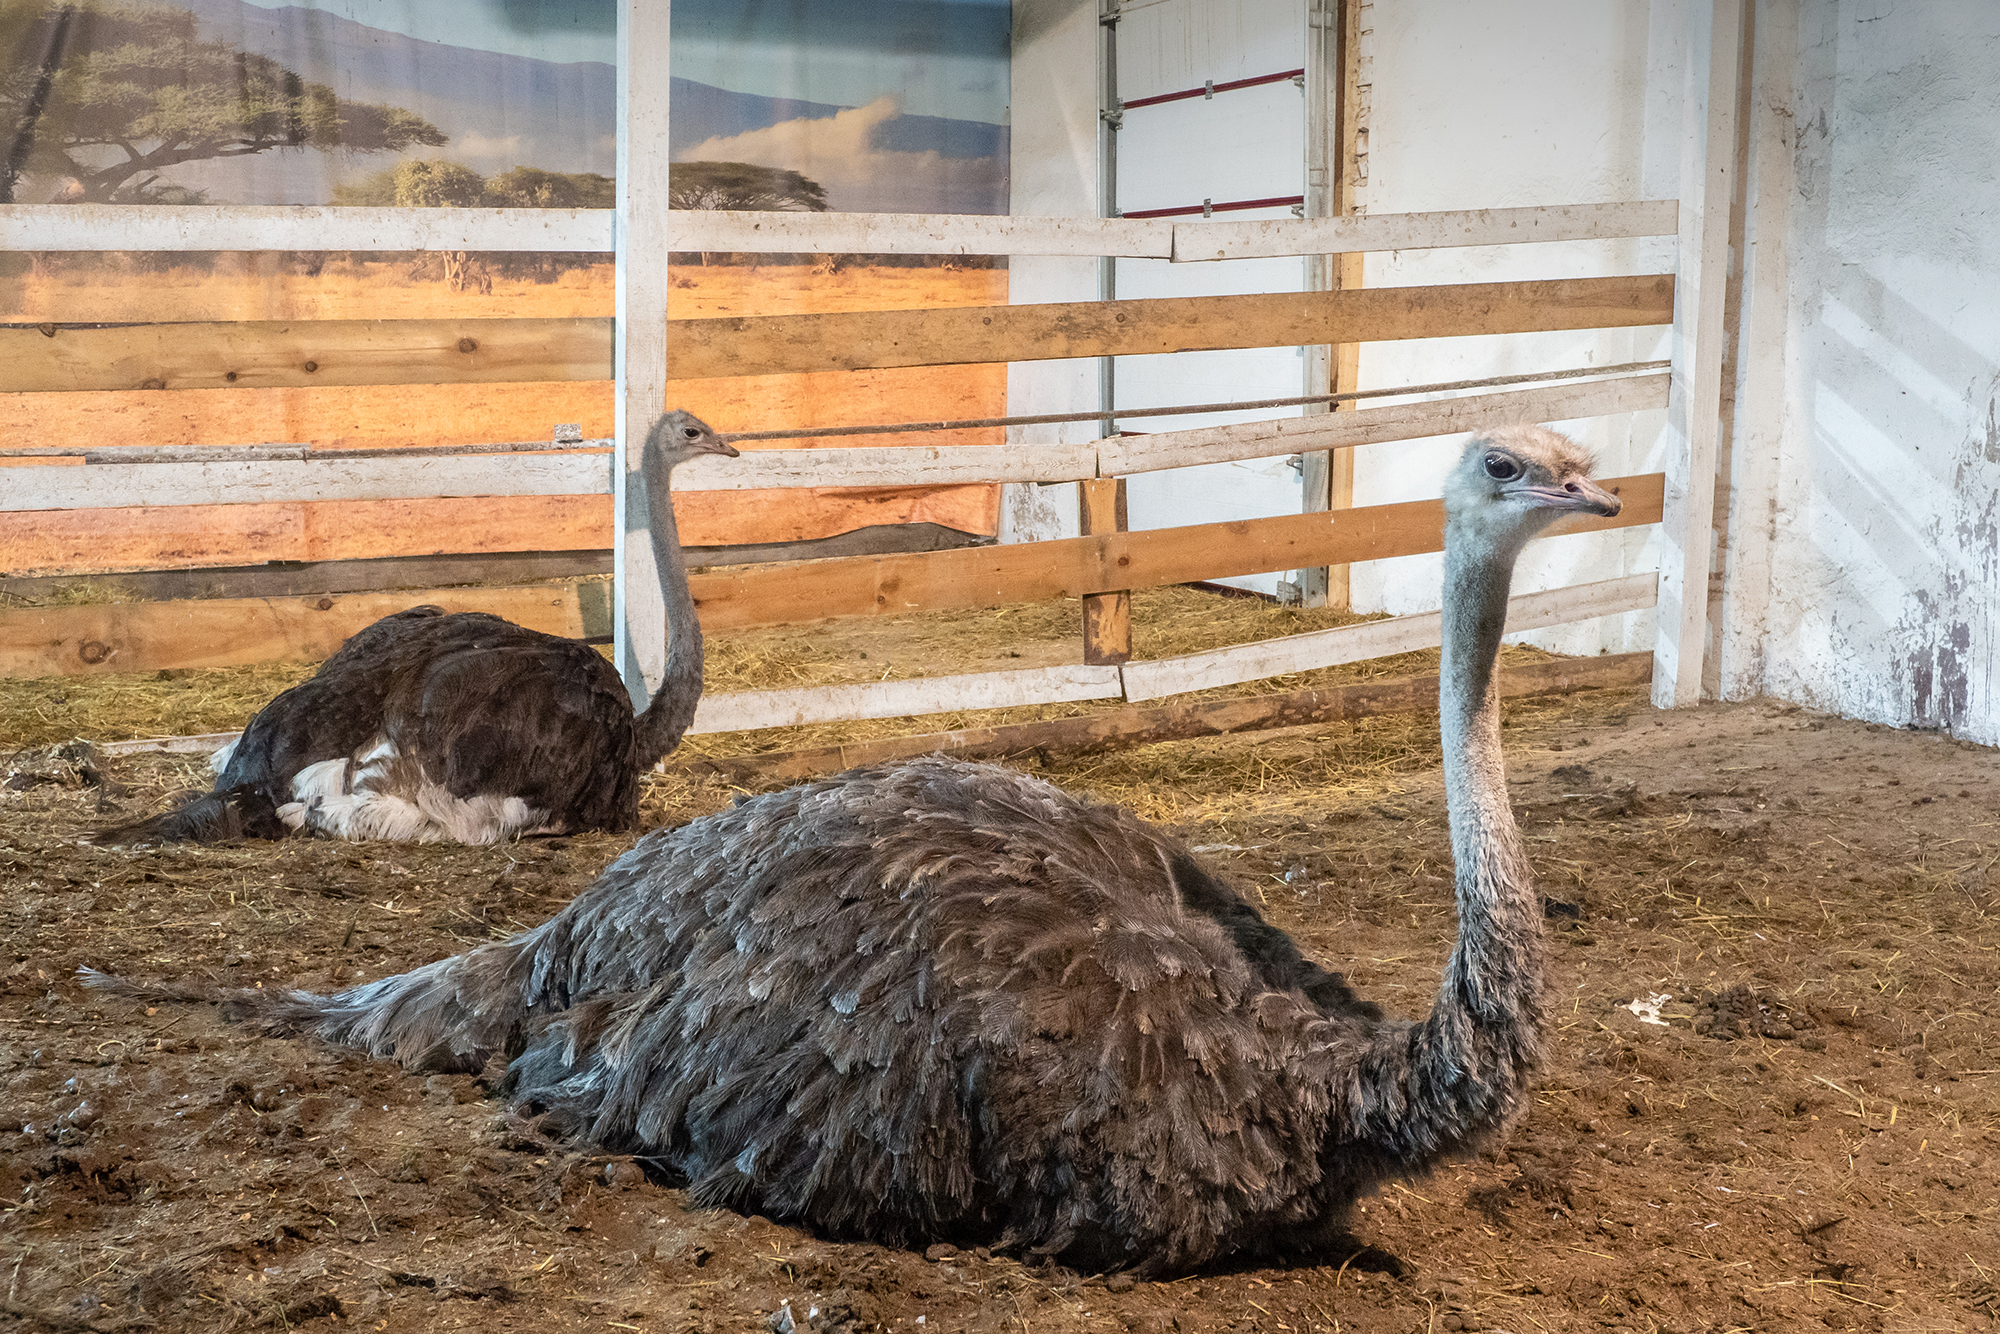 Я была на ферме дважды. Во второй раз страусы находились в помещении: как мне объяснили, был гололед и птицы могли повредить ноги